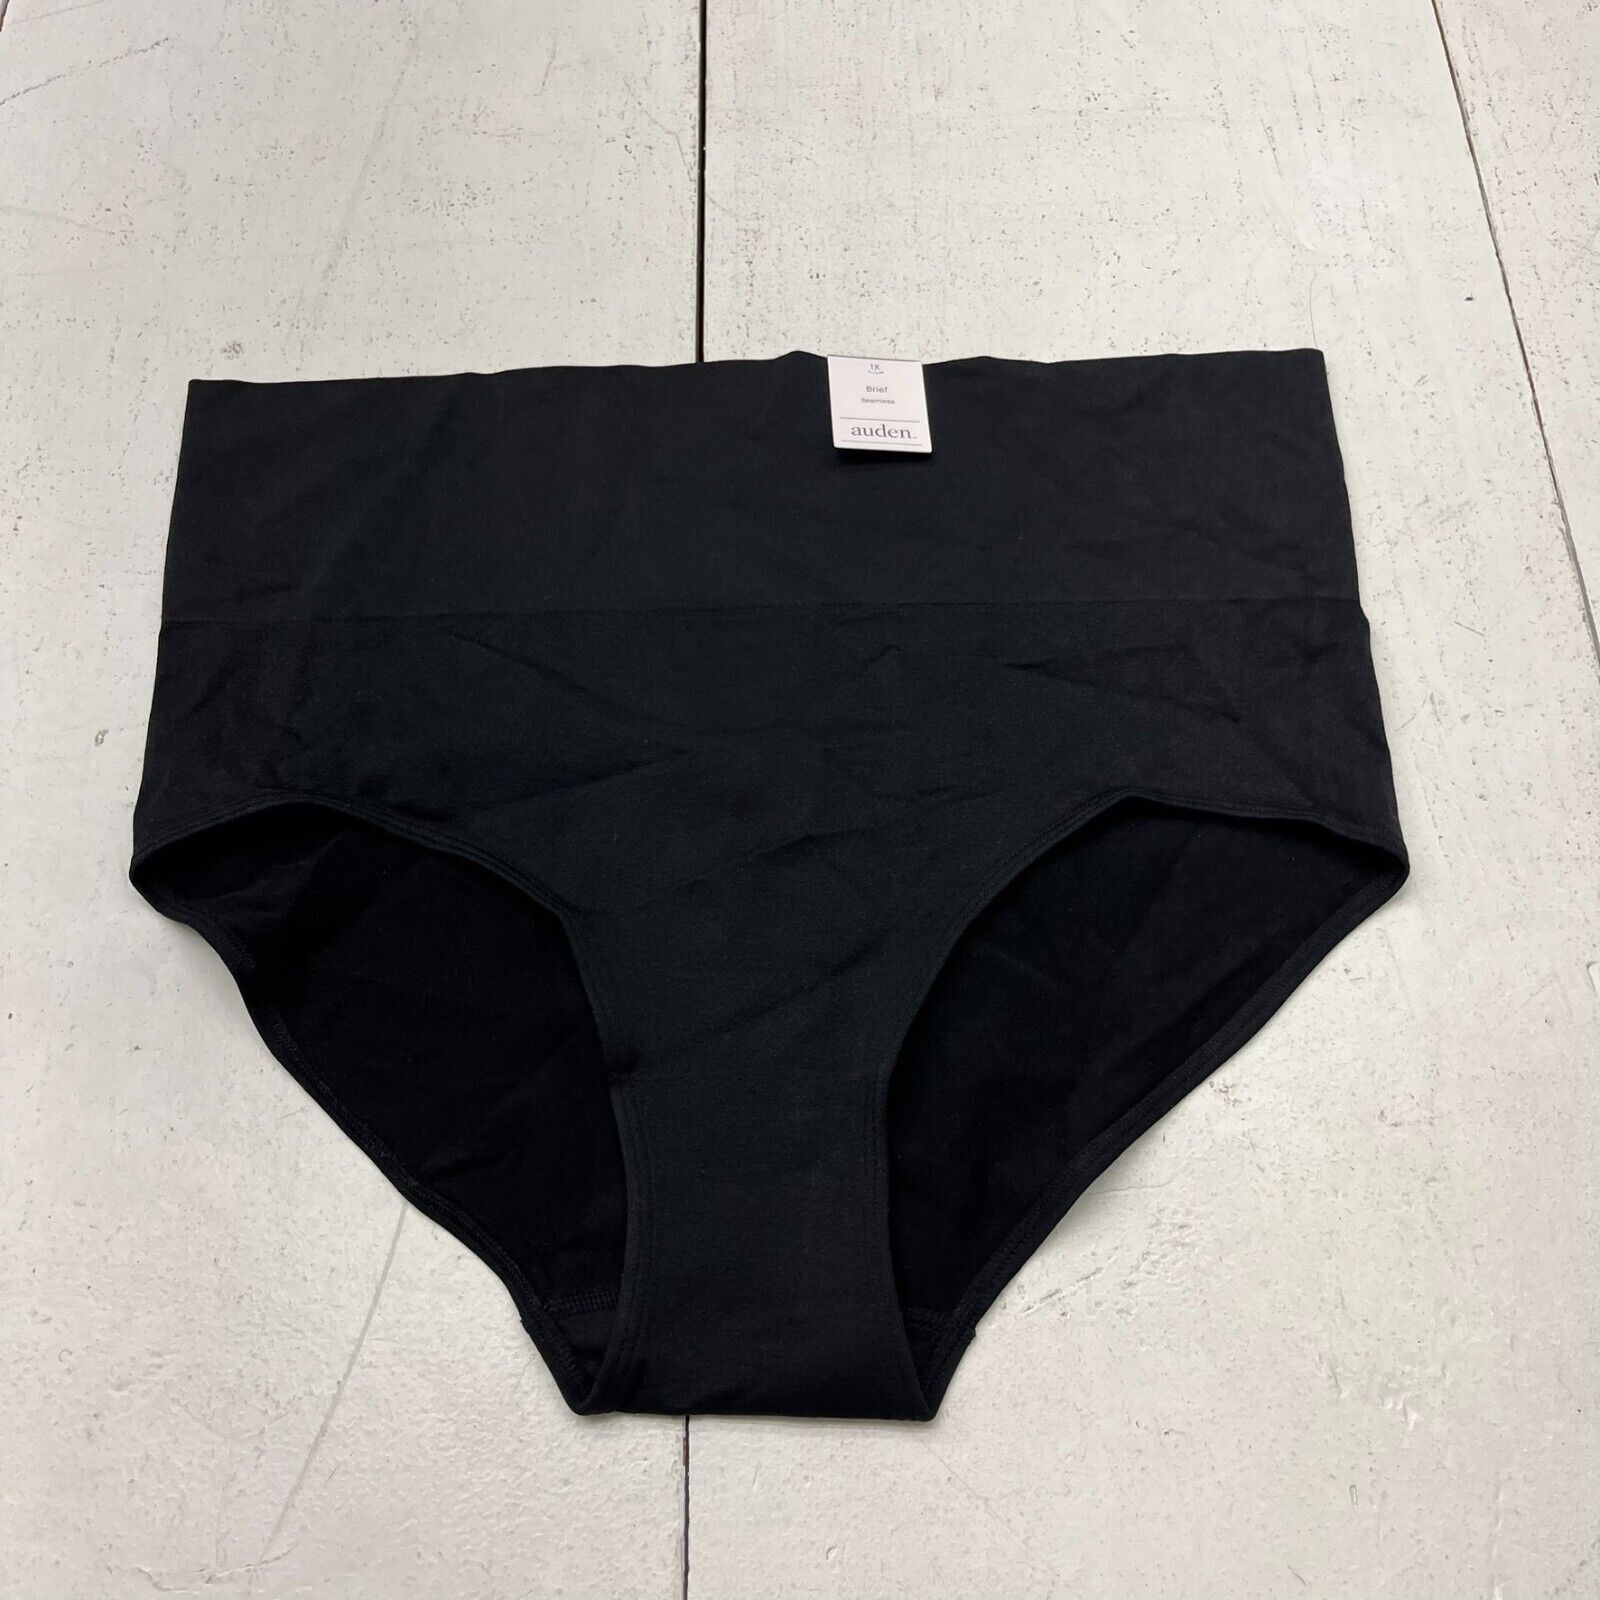 Auden Black Seamless Brief Underwear Women's Size 1X NEW